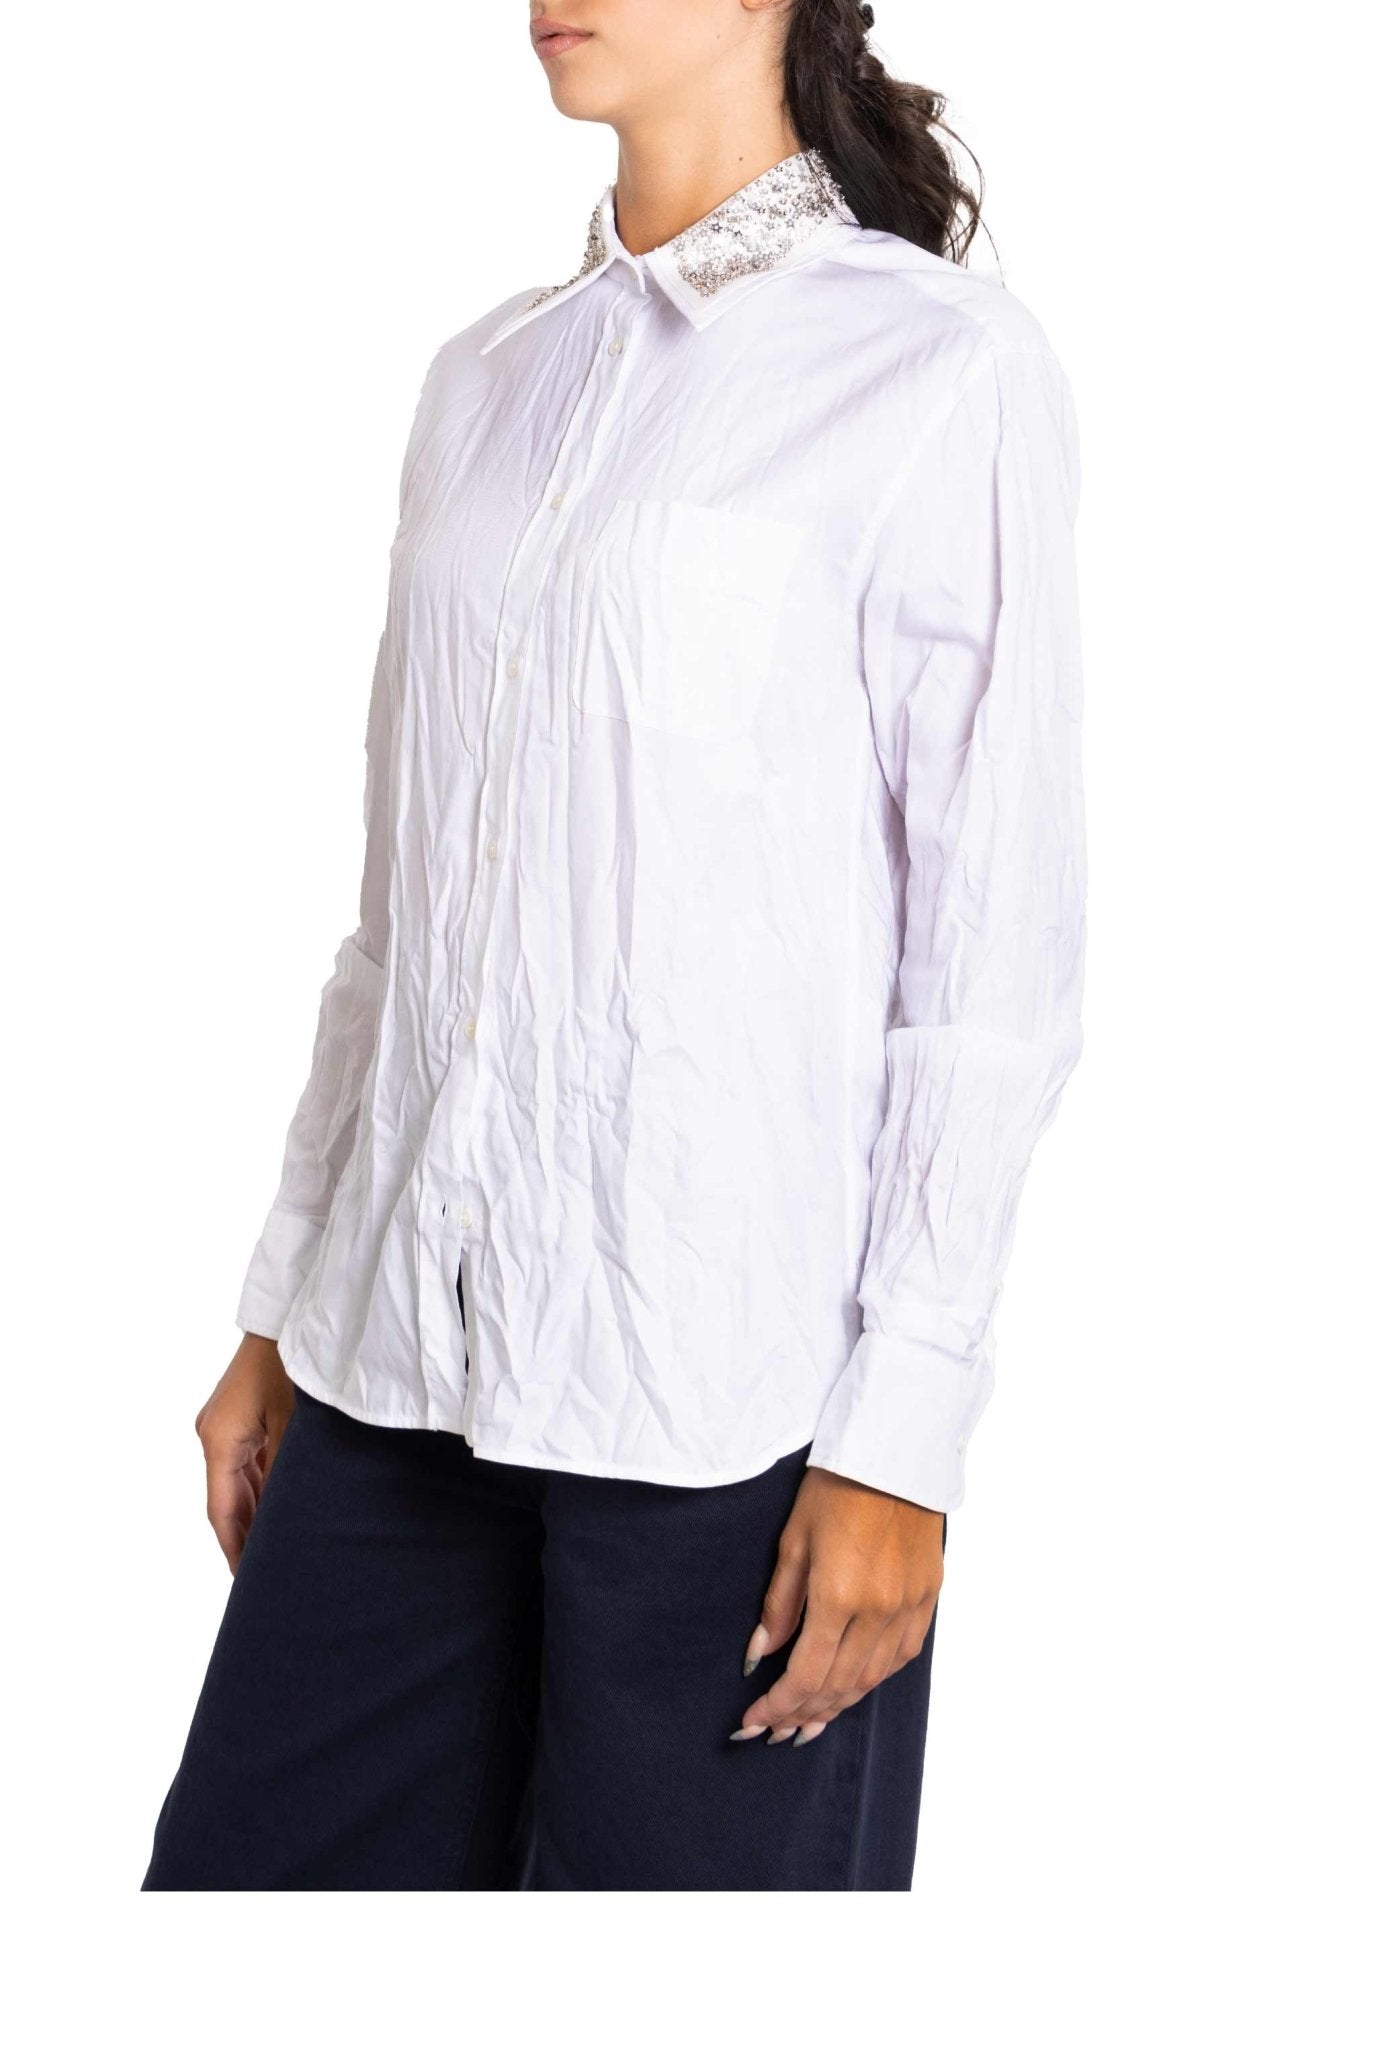 Camicia effetto stropicciato con colletto decorato- N°21 -Giorgioquinto